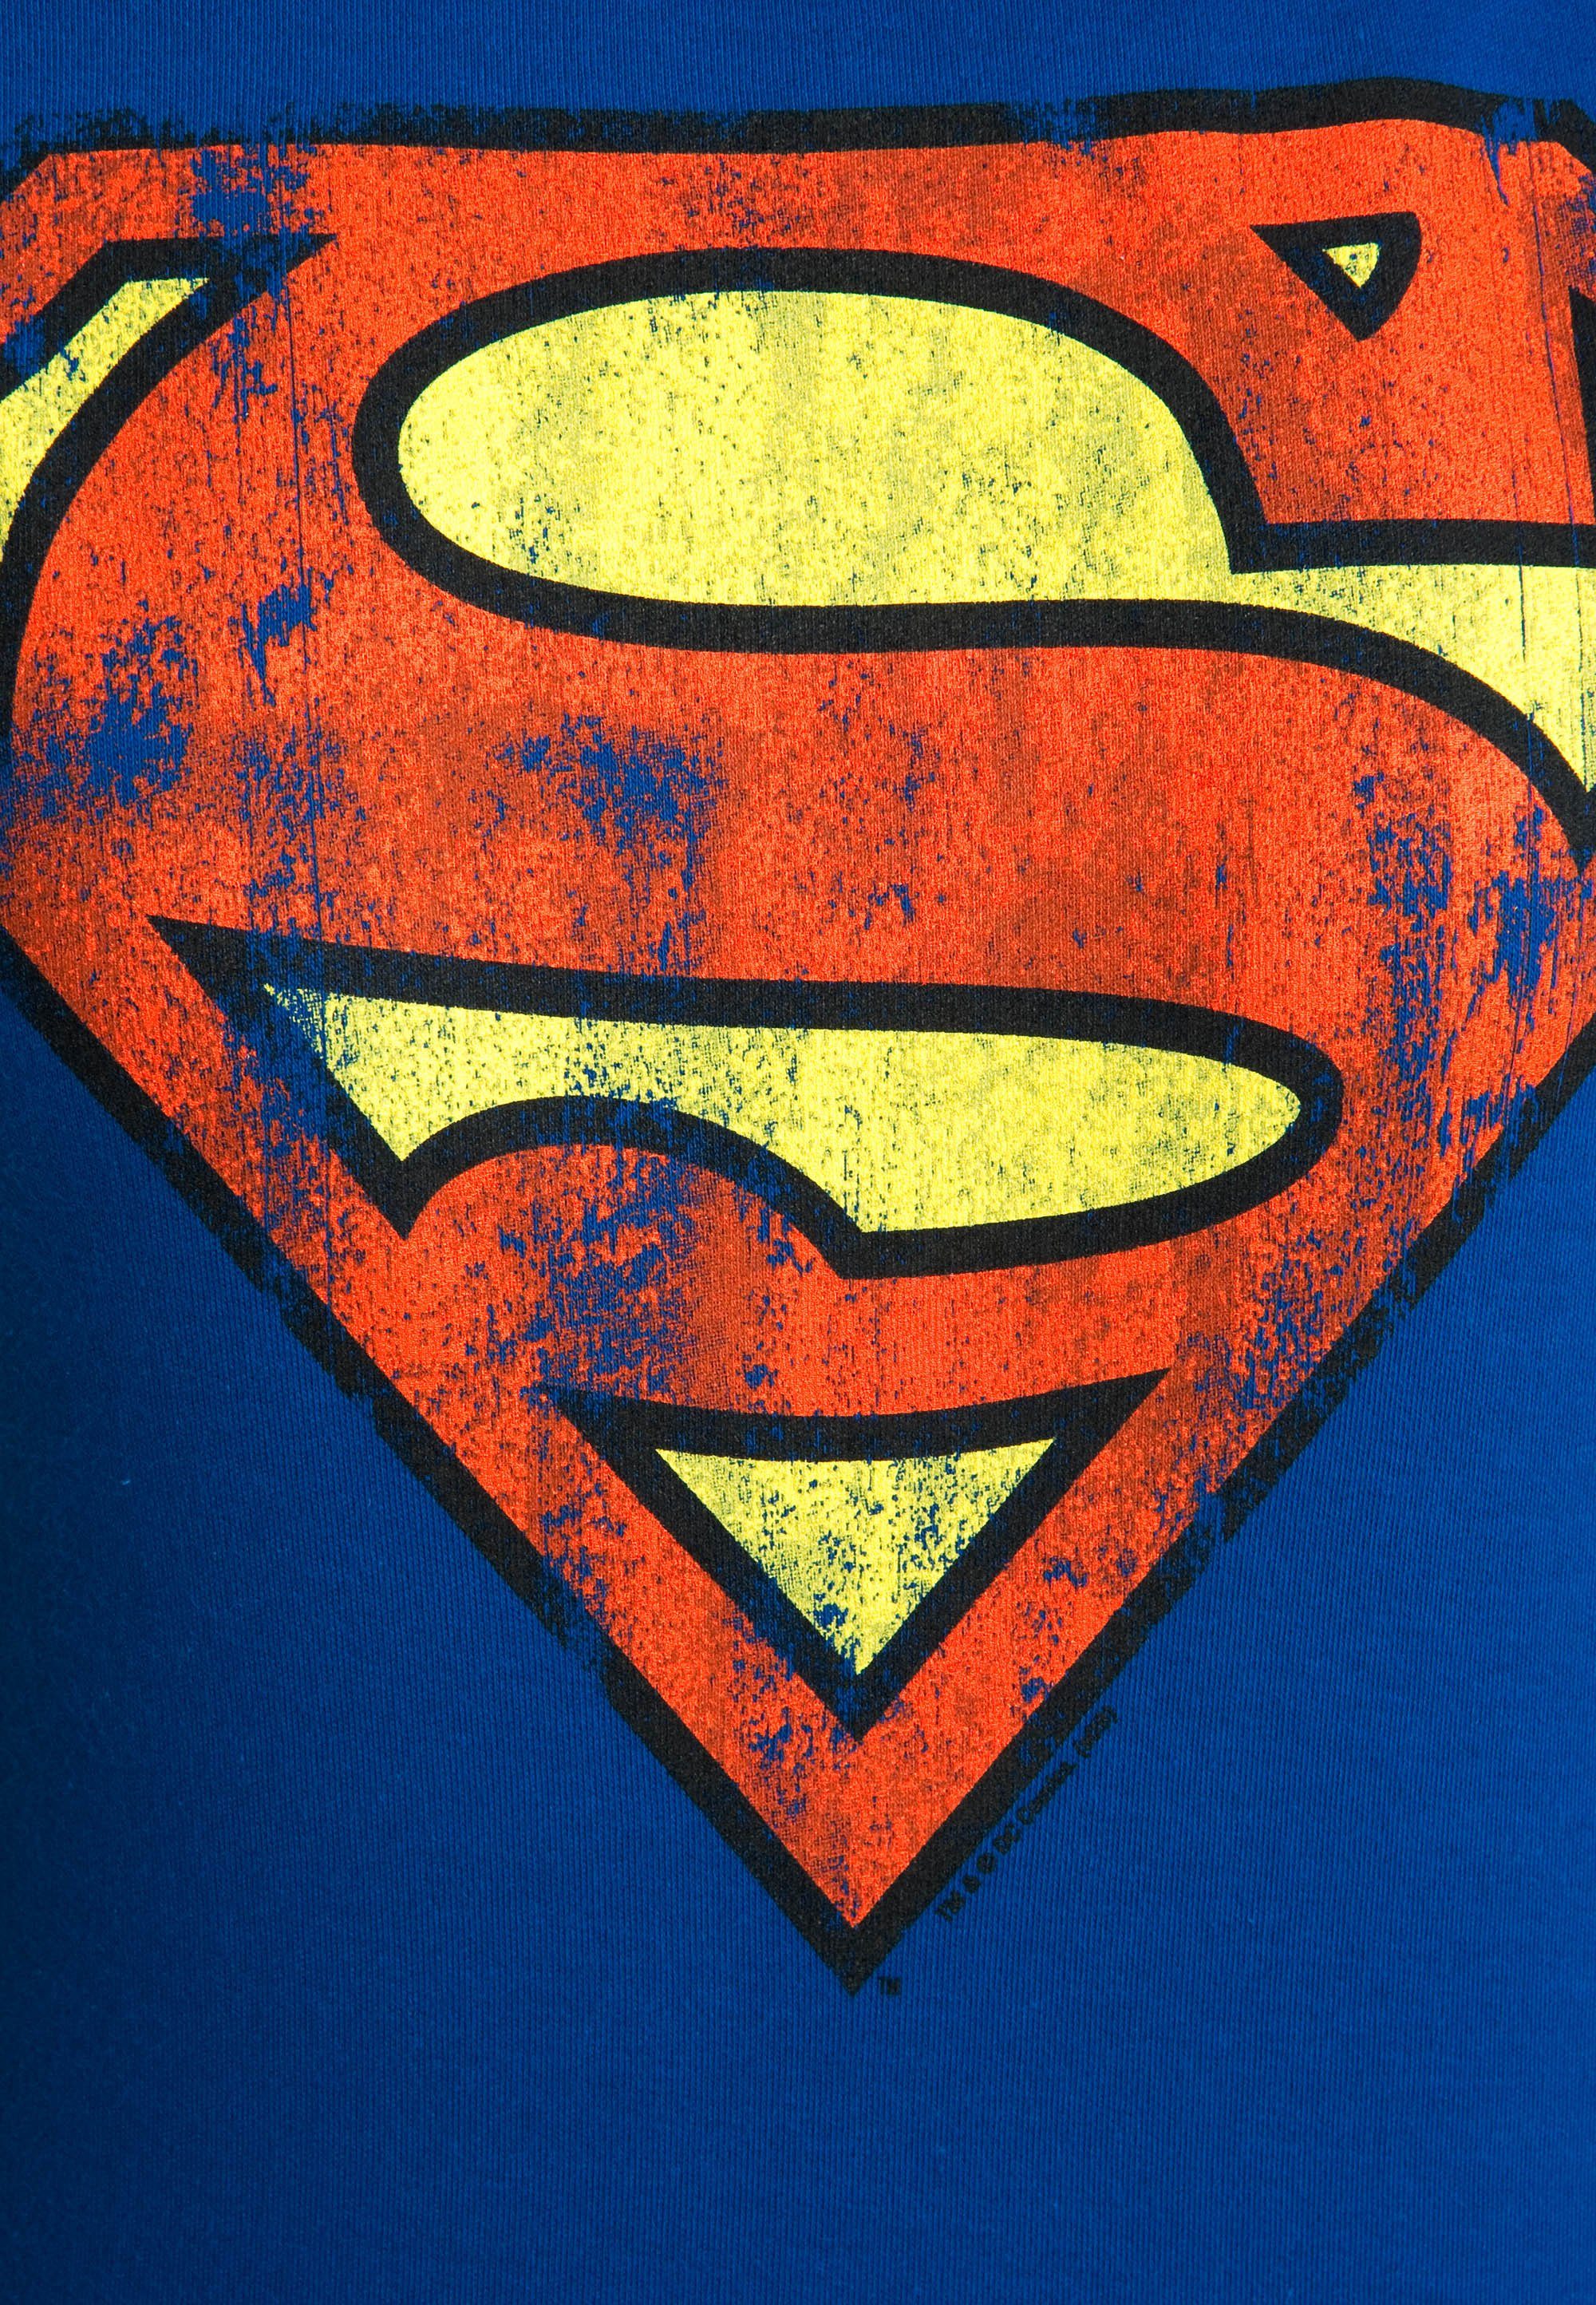 lizenzierten LOGOSHIRT Superman-Logo T-Shirt Originaldesign mit